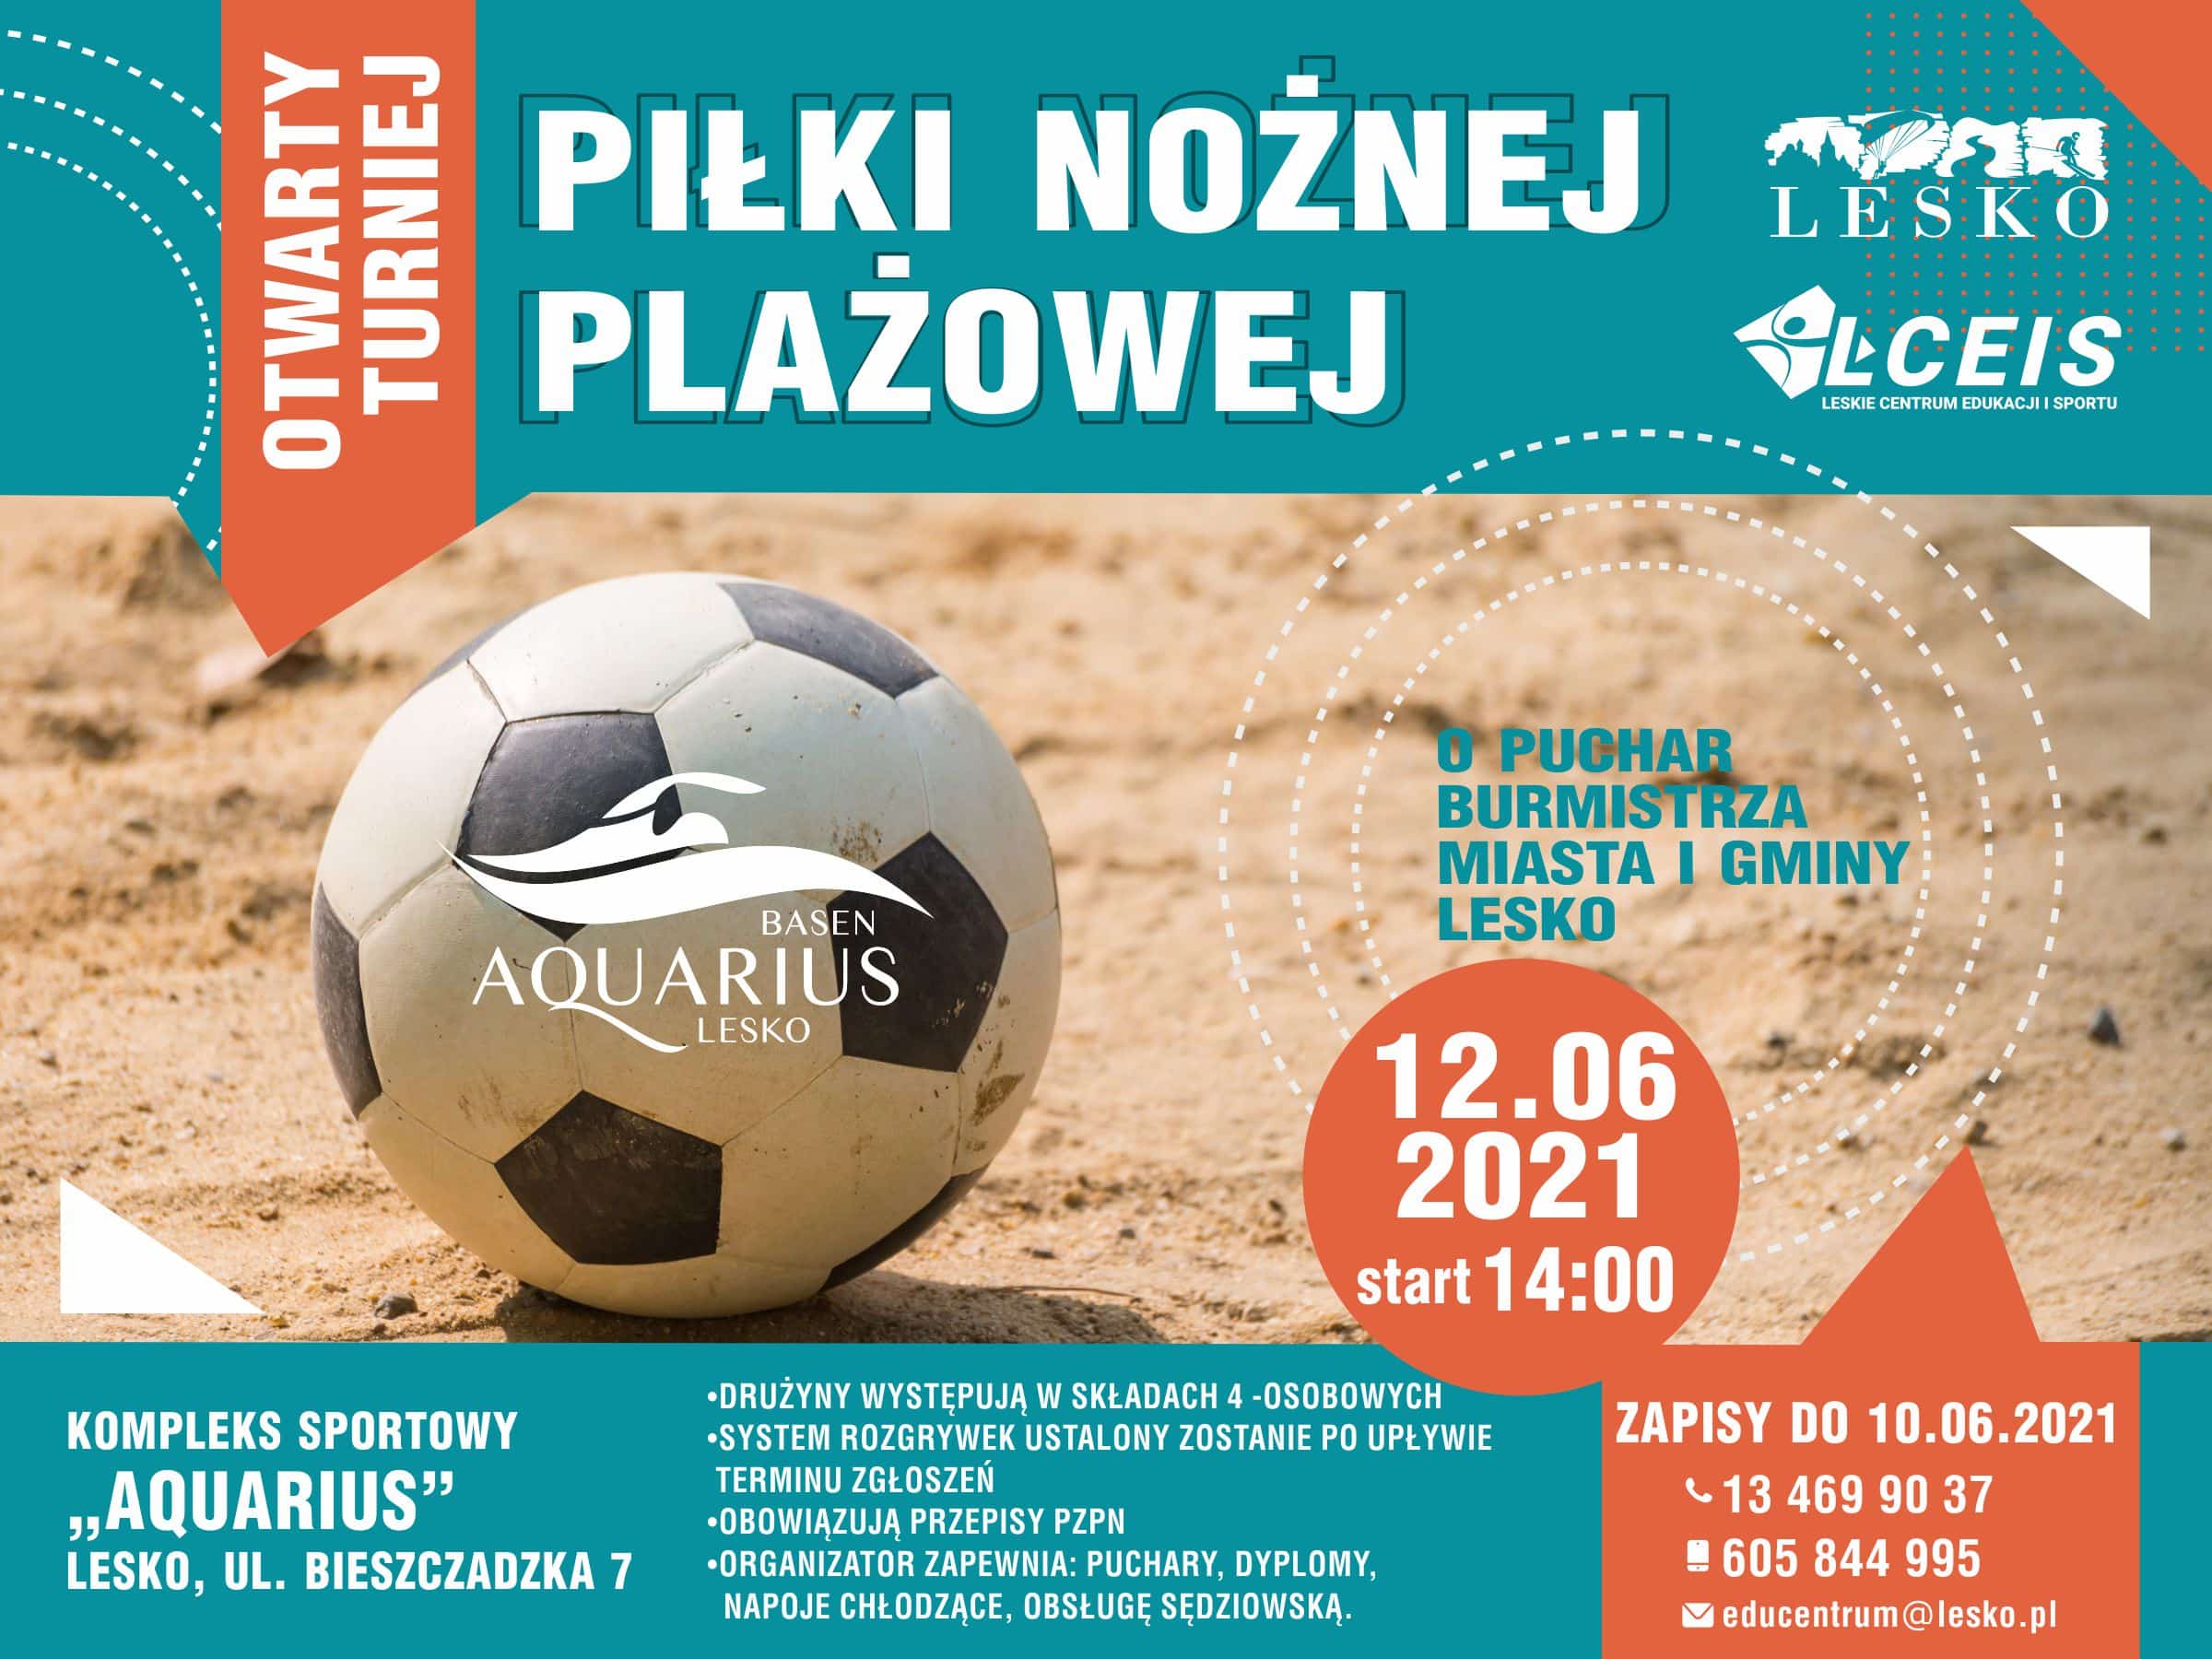 Otwarty Turniej Piłki Nożnej Plażowej oraz Piłki Siatkowej Plażowej